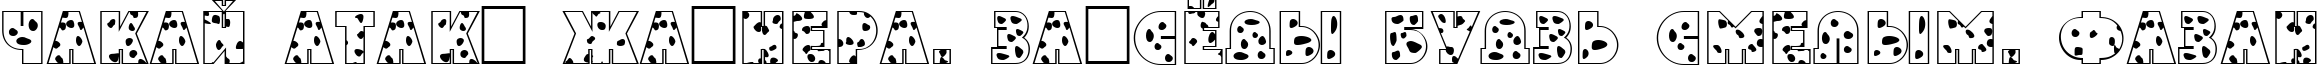 Пример написания шрифтом a_GrotoSpt текста на белорусском